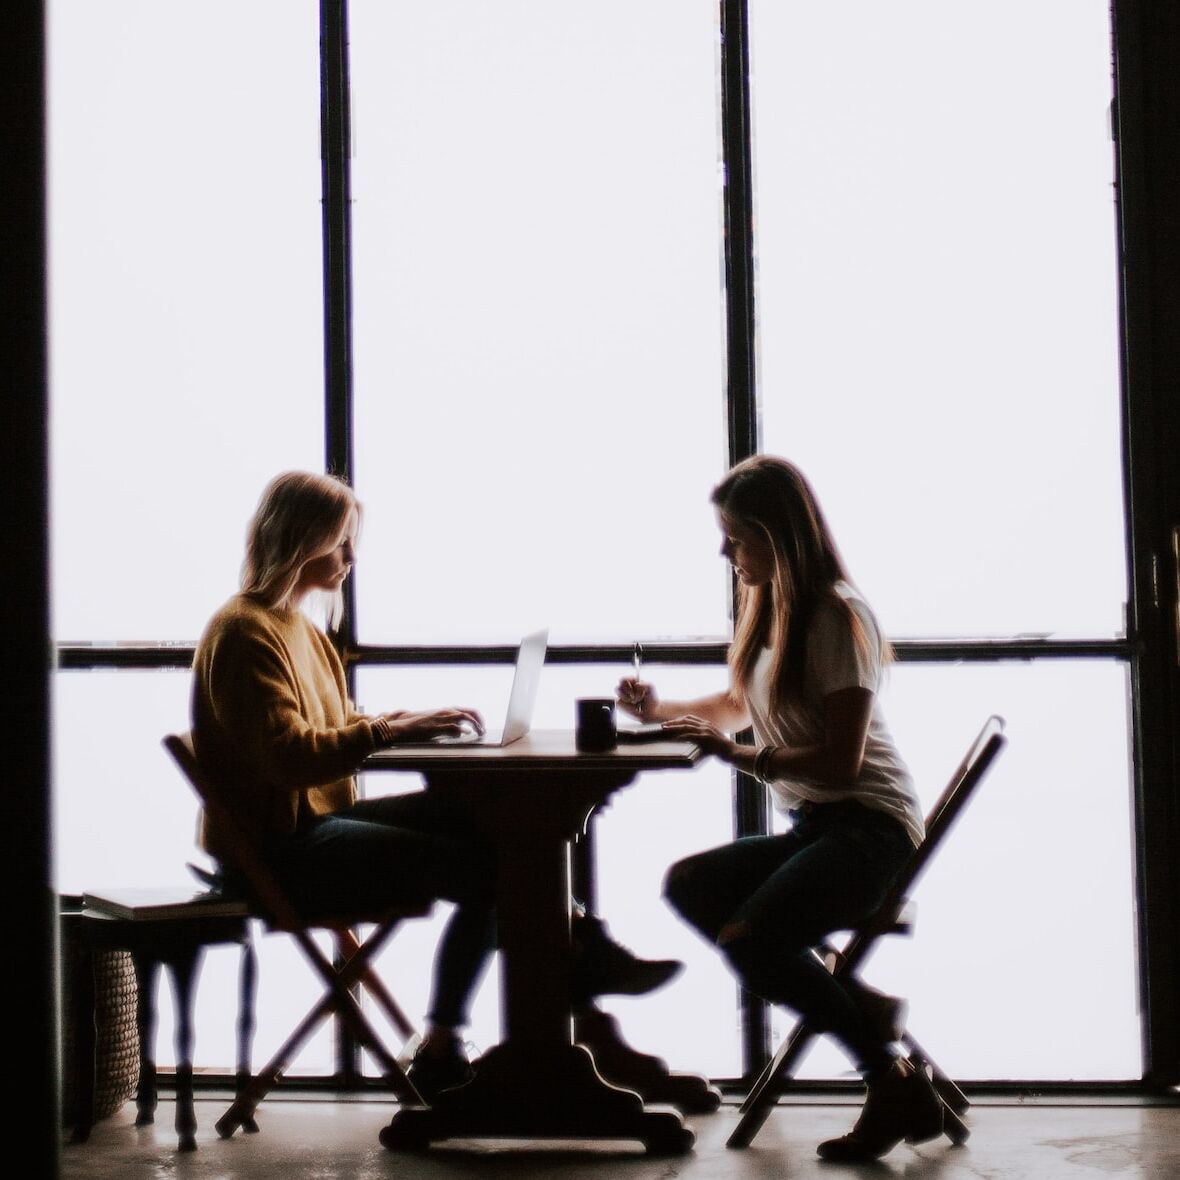 Zwei Frauen sitzen sich an einem Tisch gegenüber, Gegenlichtfotografie, starker Kontrast